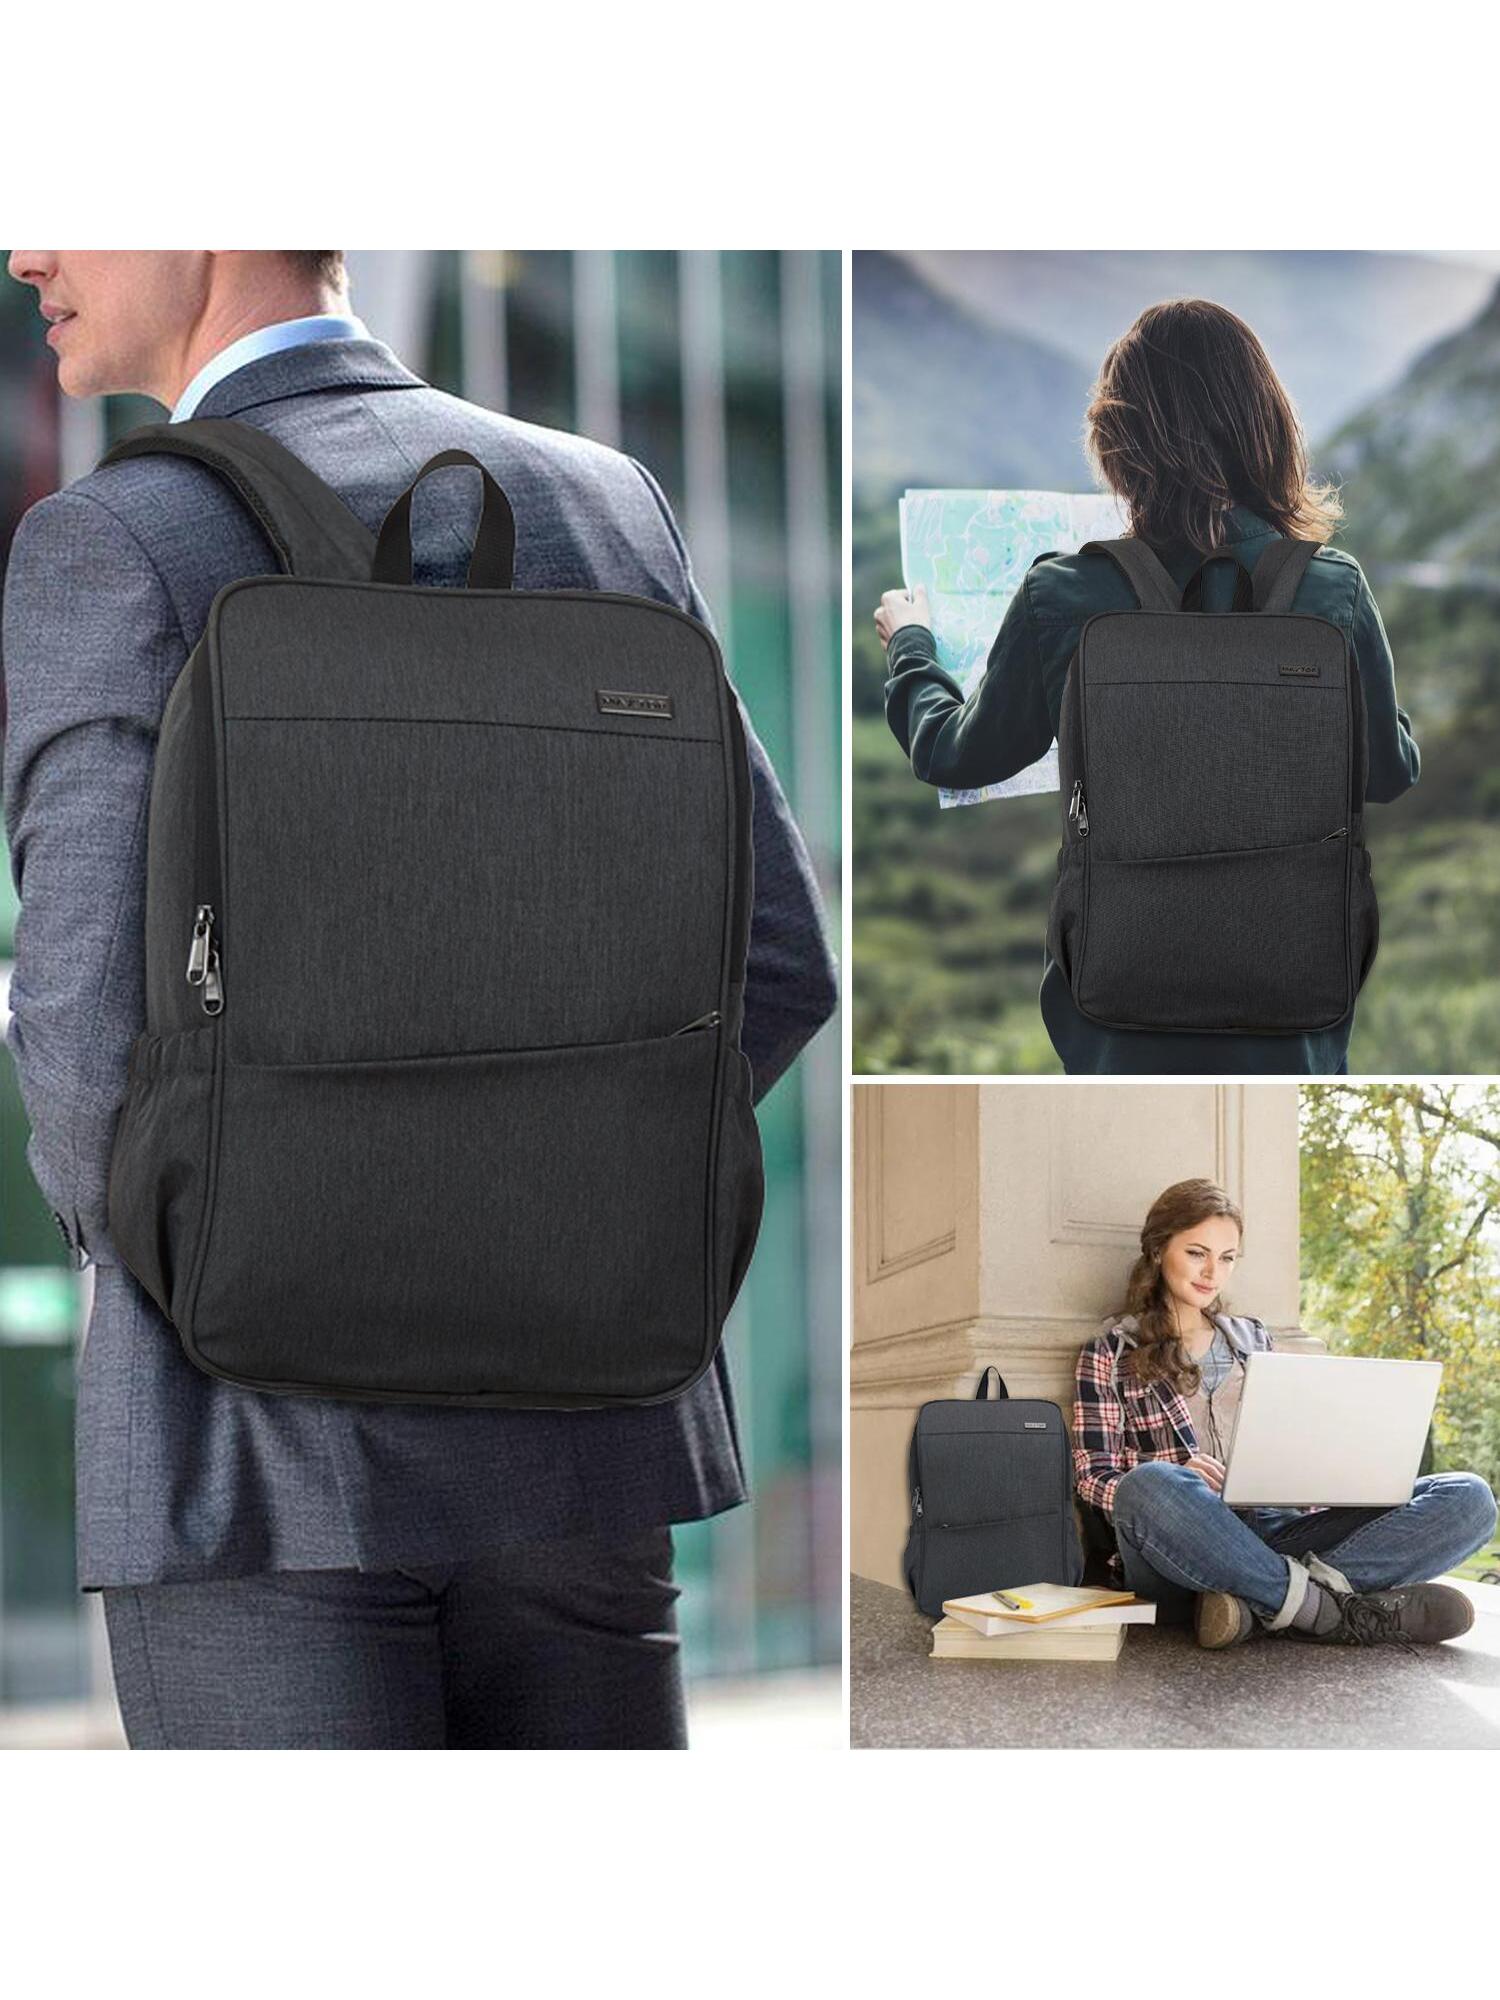 Рюкзак для ноутбука MAXTOP с глубоким хранилищем и USB-портом для зарядки Сумка для студенческого компьютера Подходит для 16-дюймового ноутбука, темно-серый рюкзак мужской для ноутбука 15 6 дюйма с usb портом